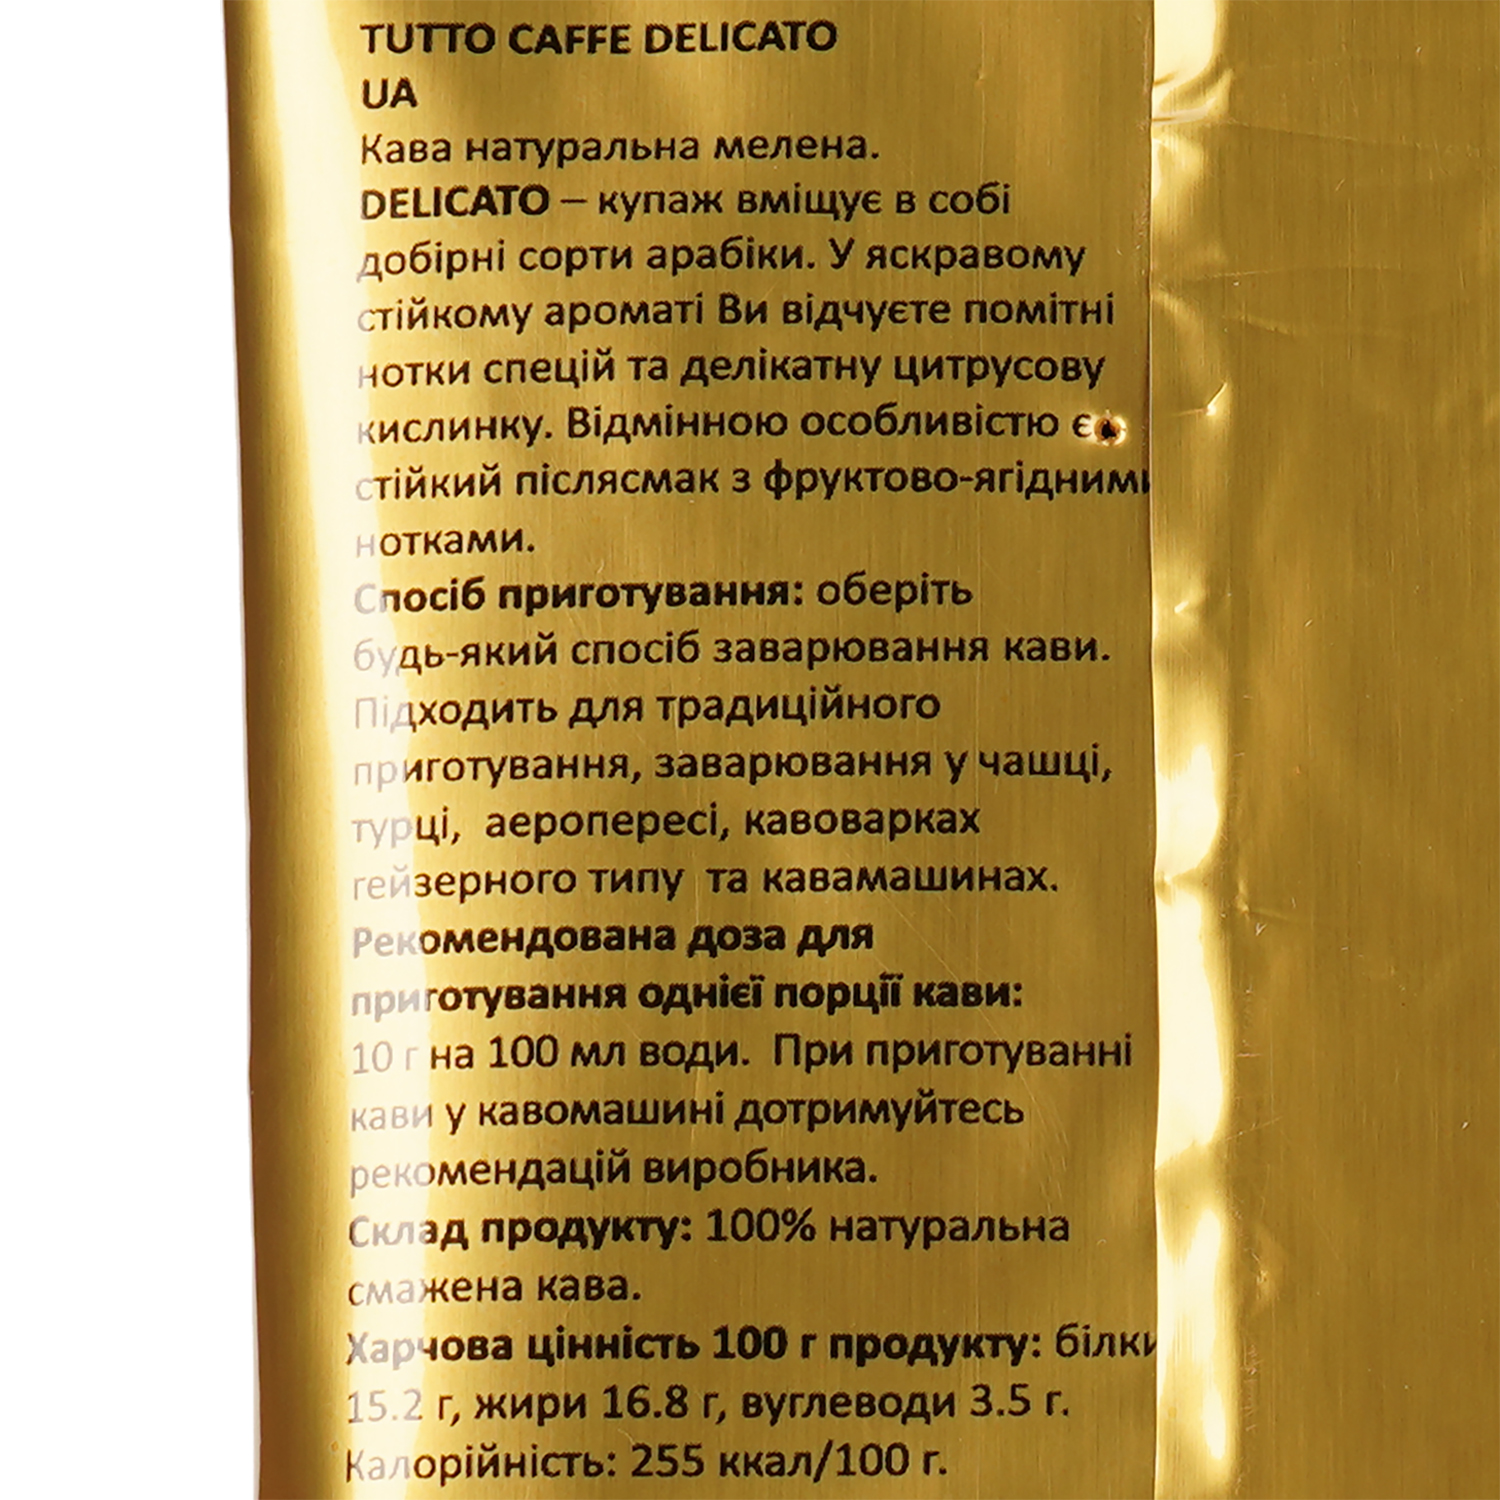 Кава мелена Tutto Caffe Delicato 100 г - фото 4